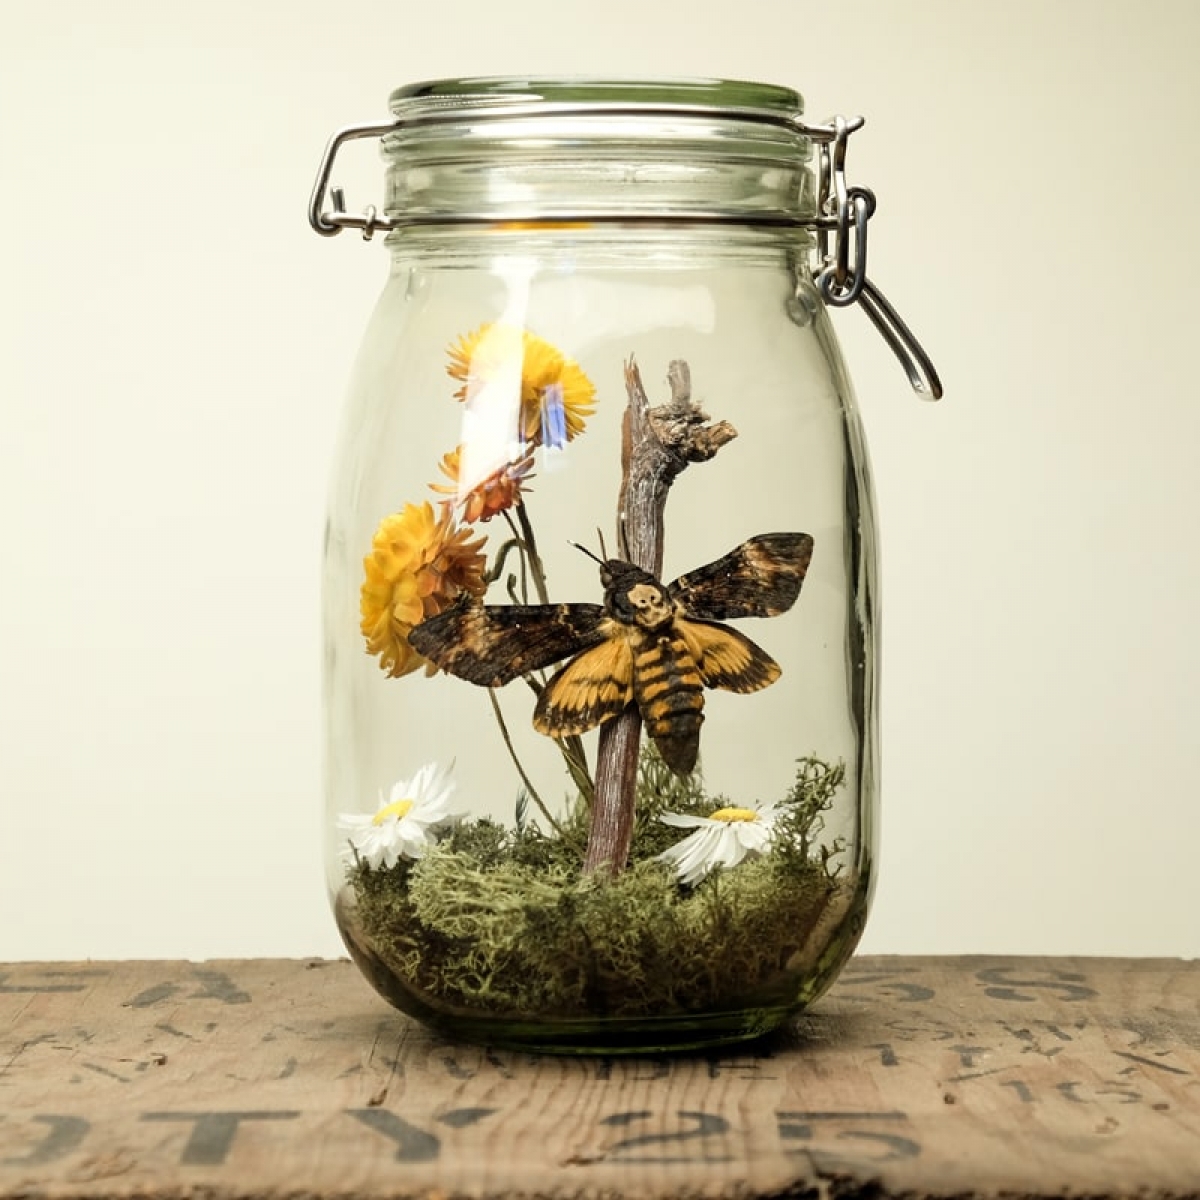 Minibeast Glass Jar Terrarium Kit with Death Head Moth